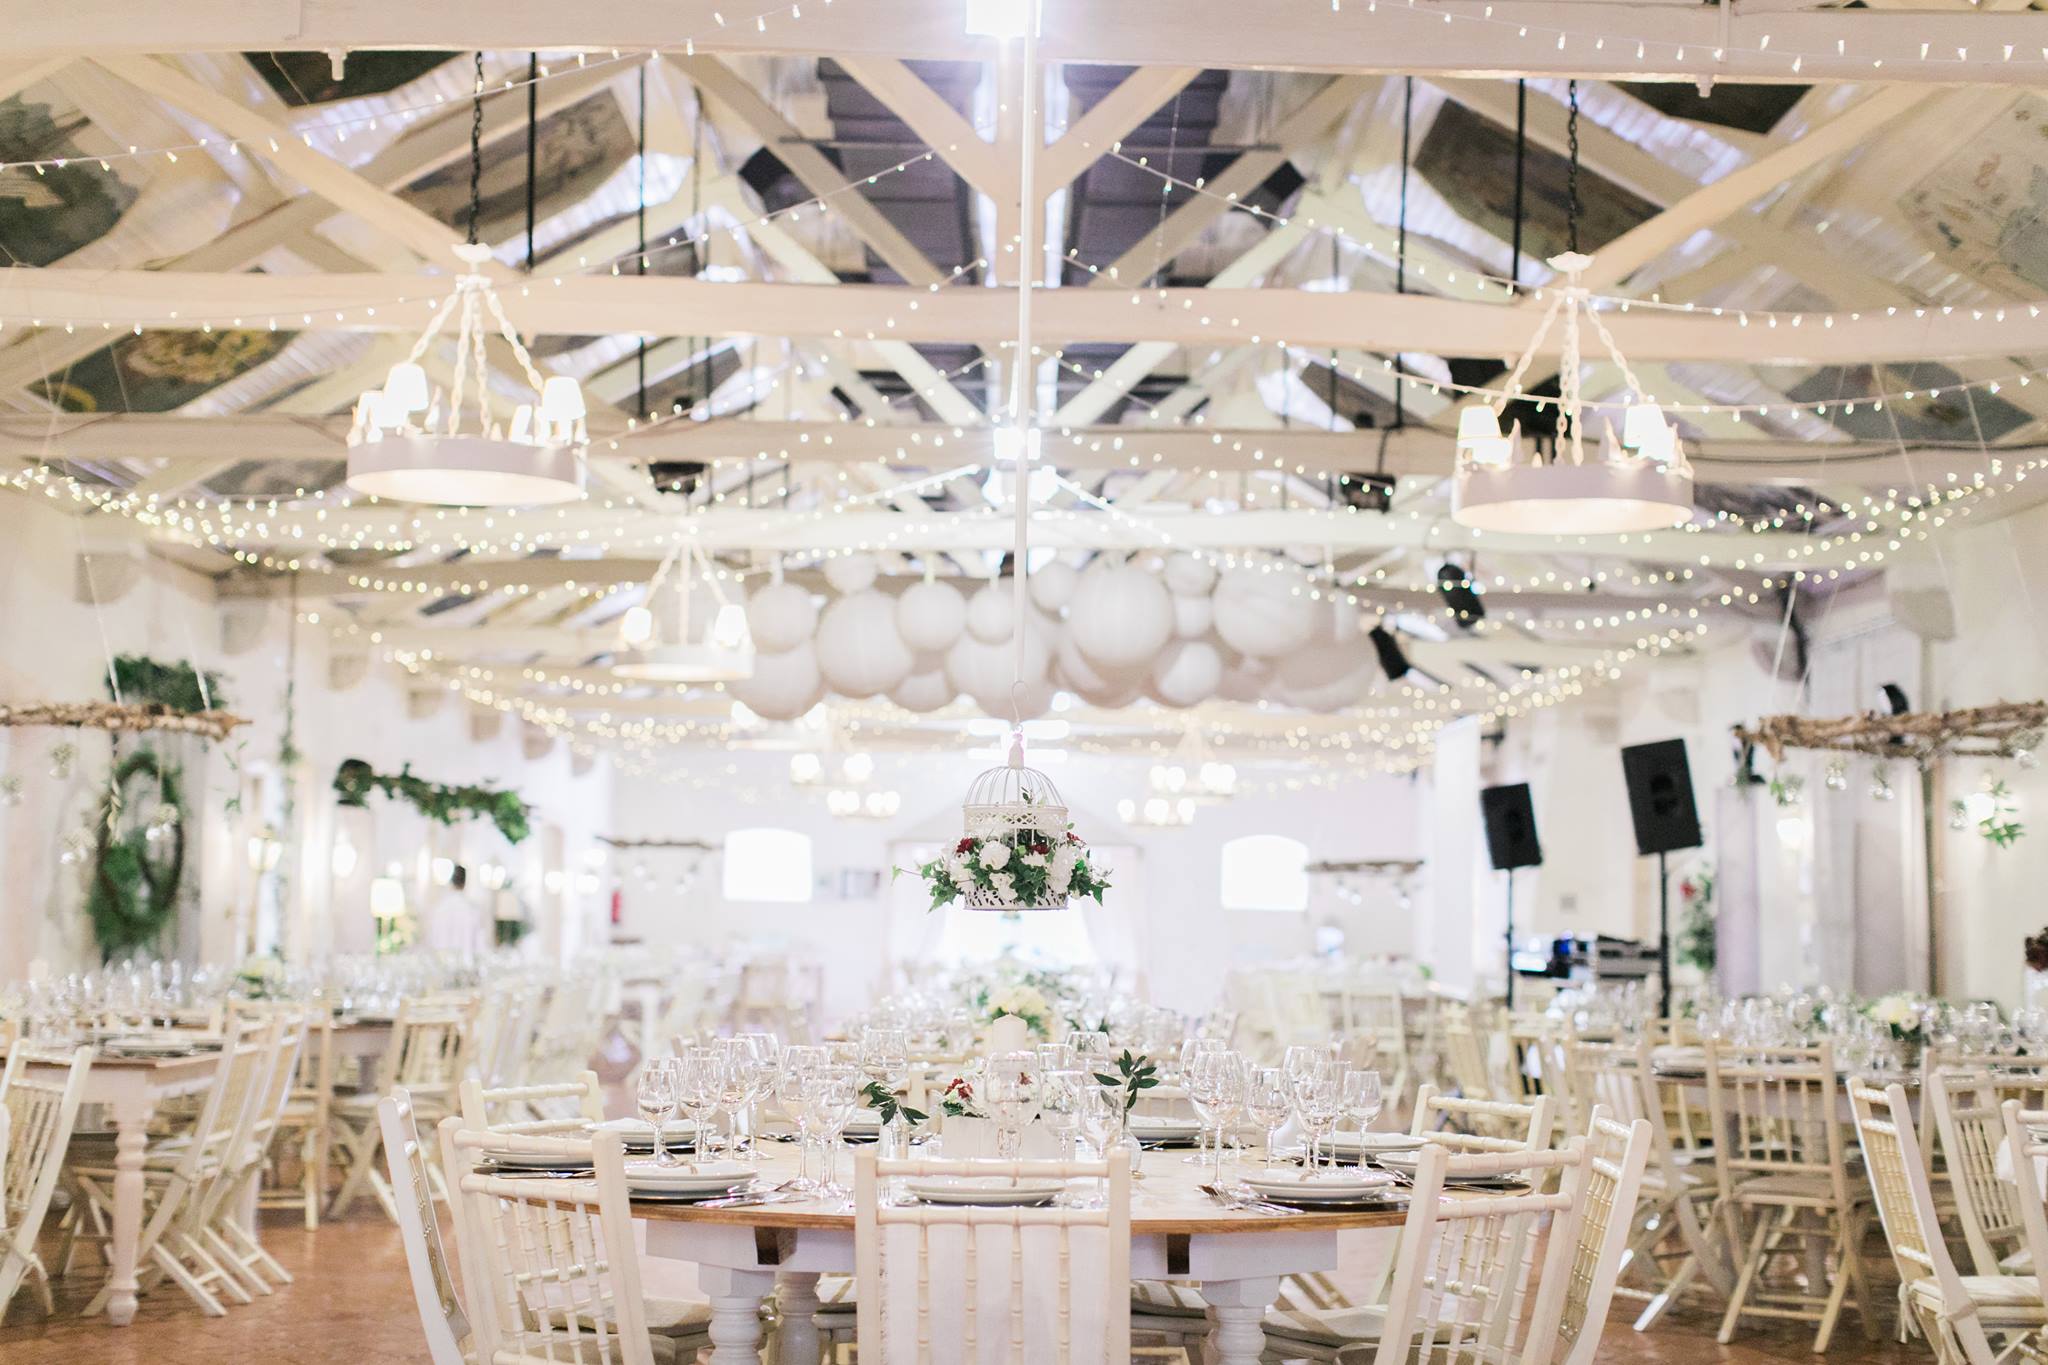 sala casamento rústica madeira tons branco